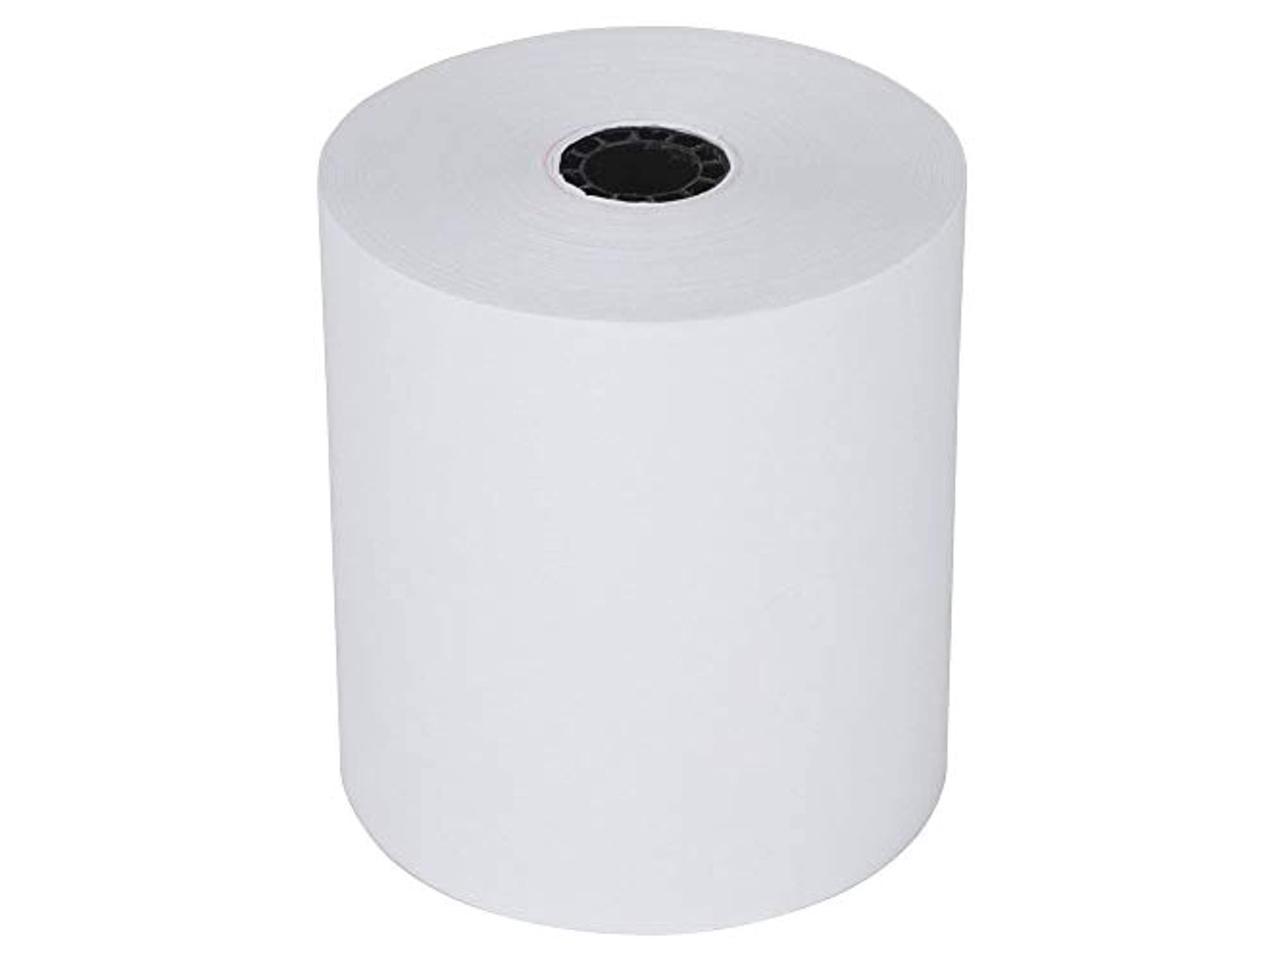 3 1 8 x 230' thermal paper rolls pos-xxr500 thermal receipt printer 50 